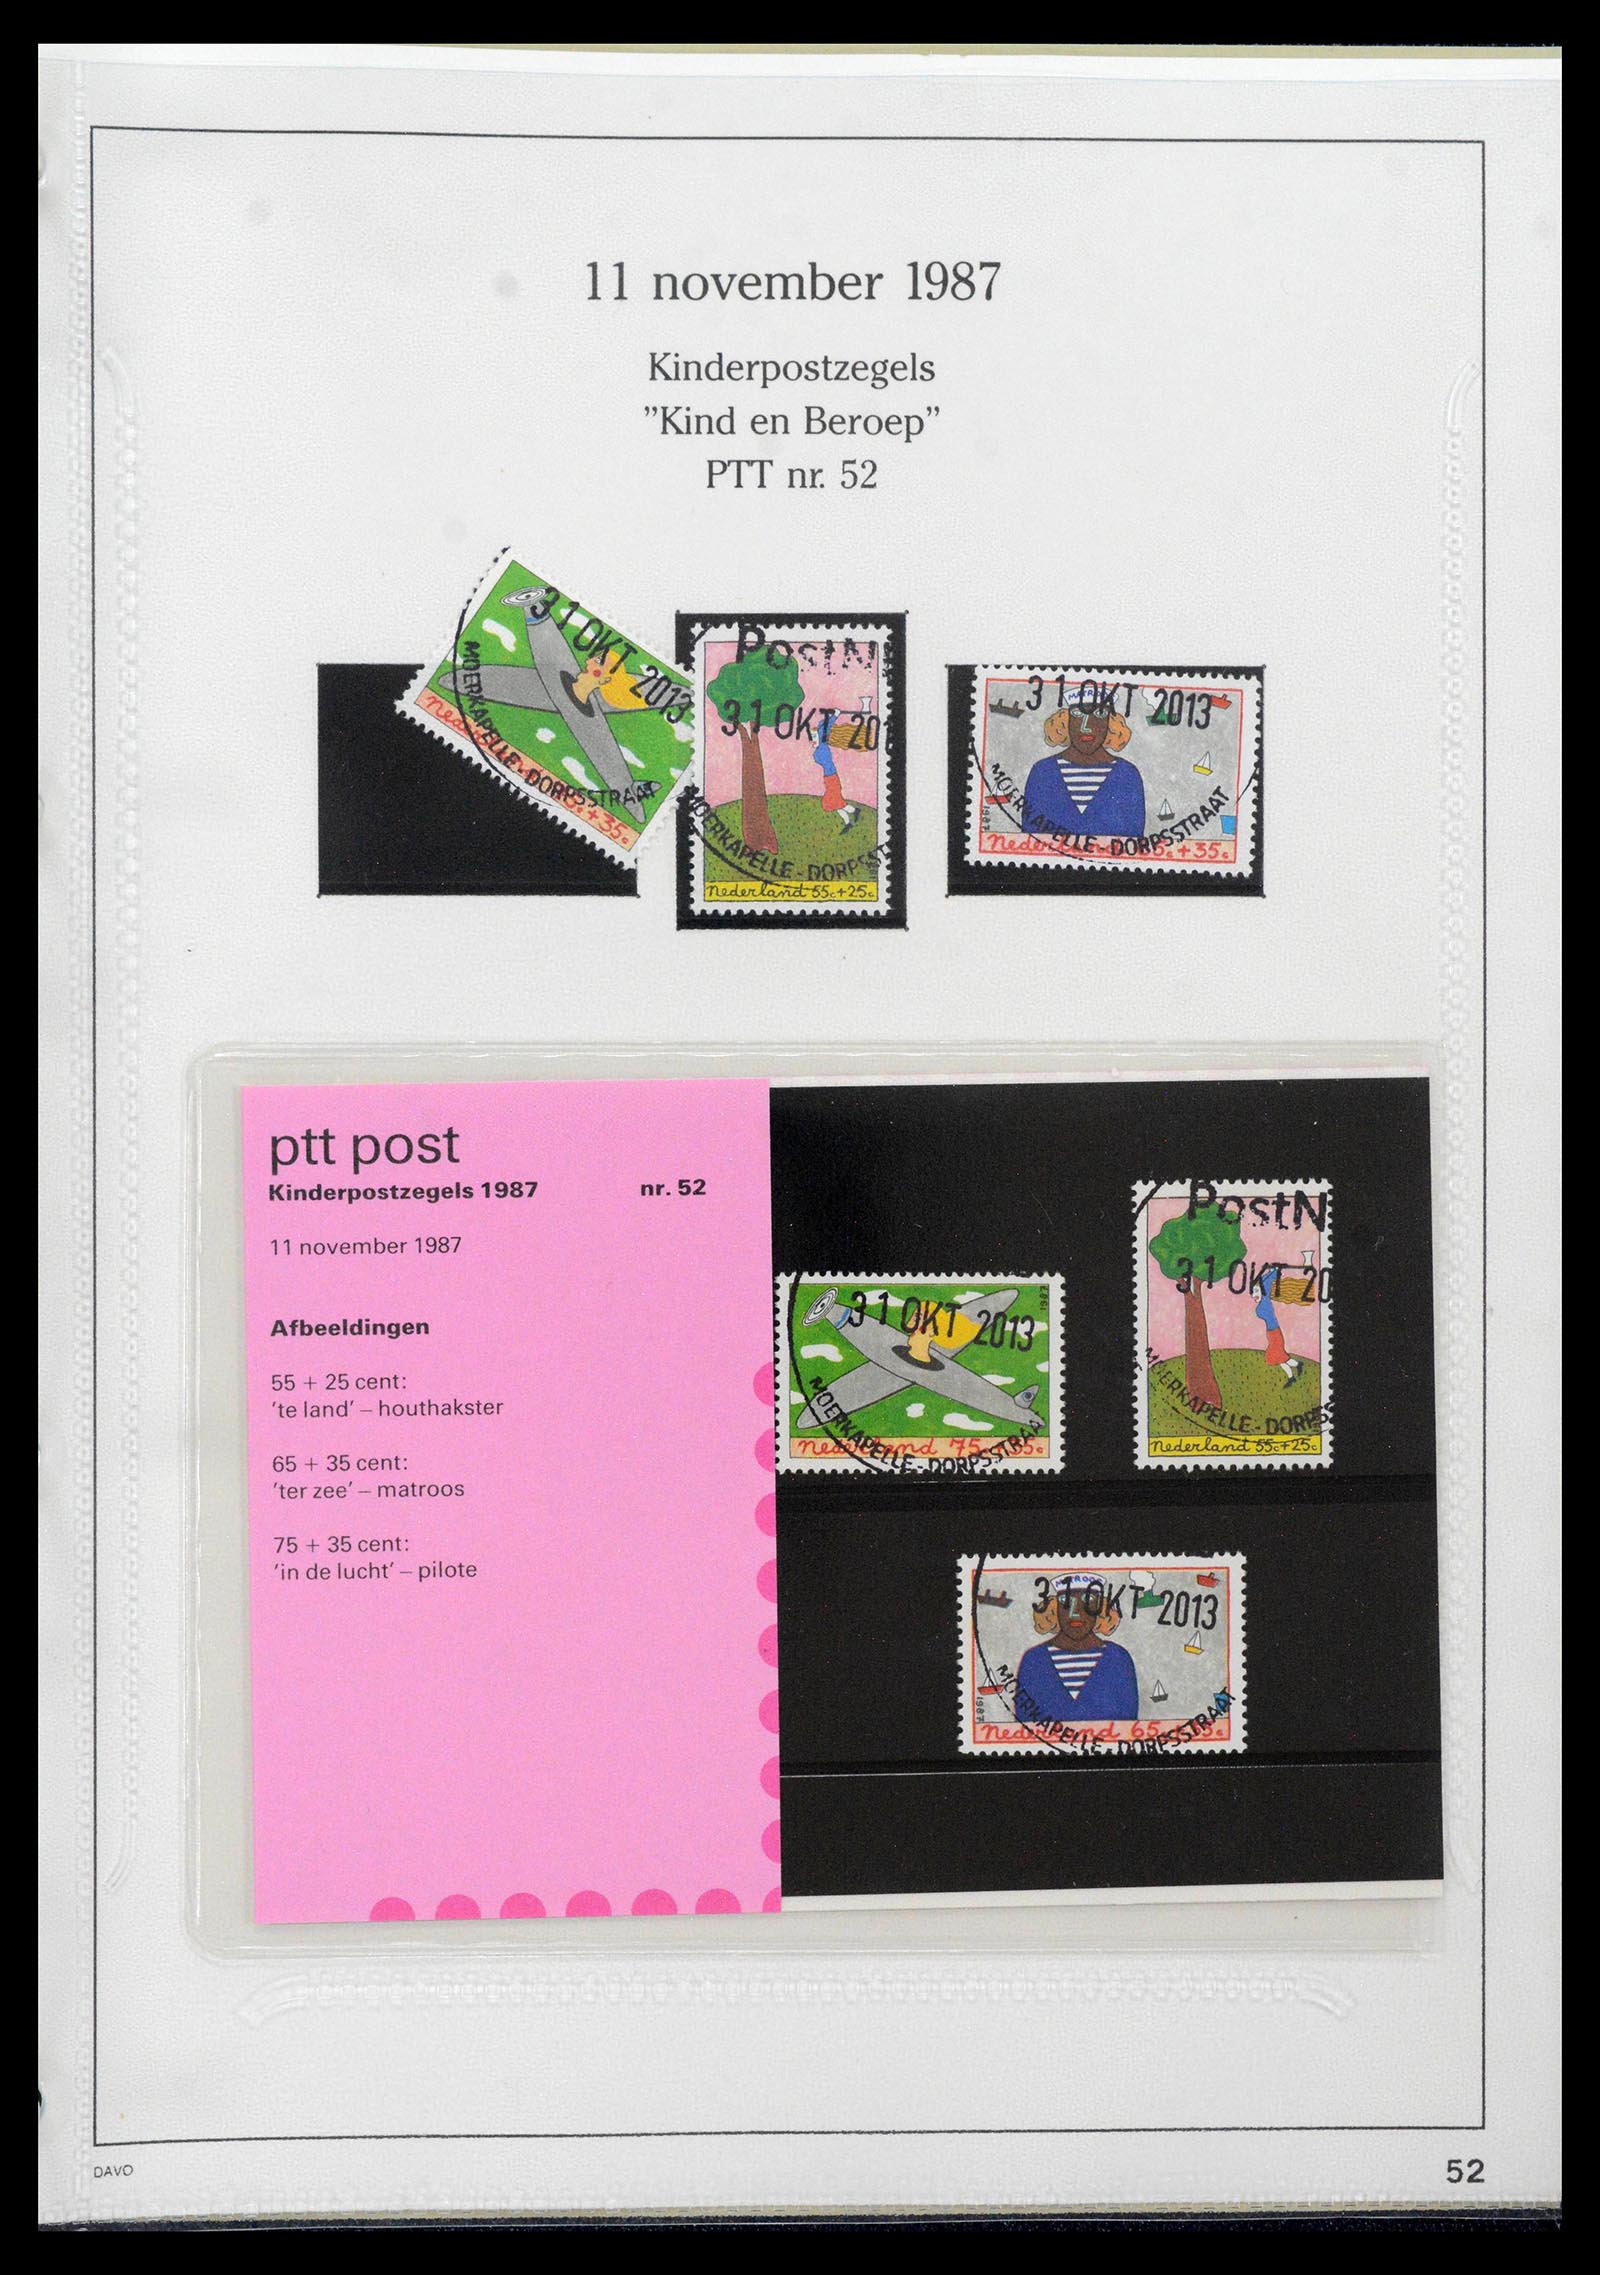 39121 0052 - Stamp collection 39121 Netherlands presentationpacks 1982-2001.